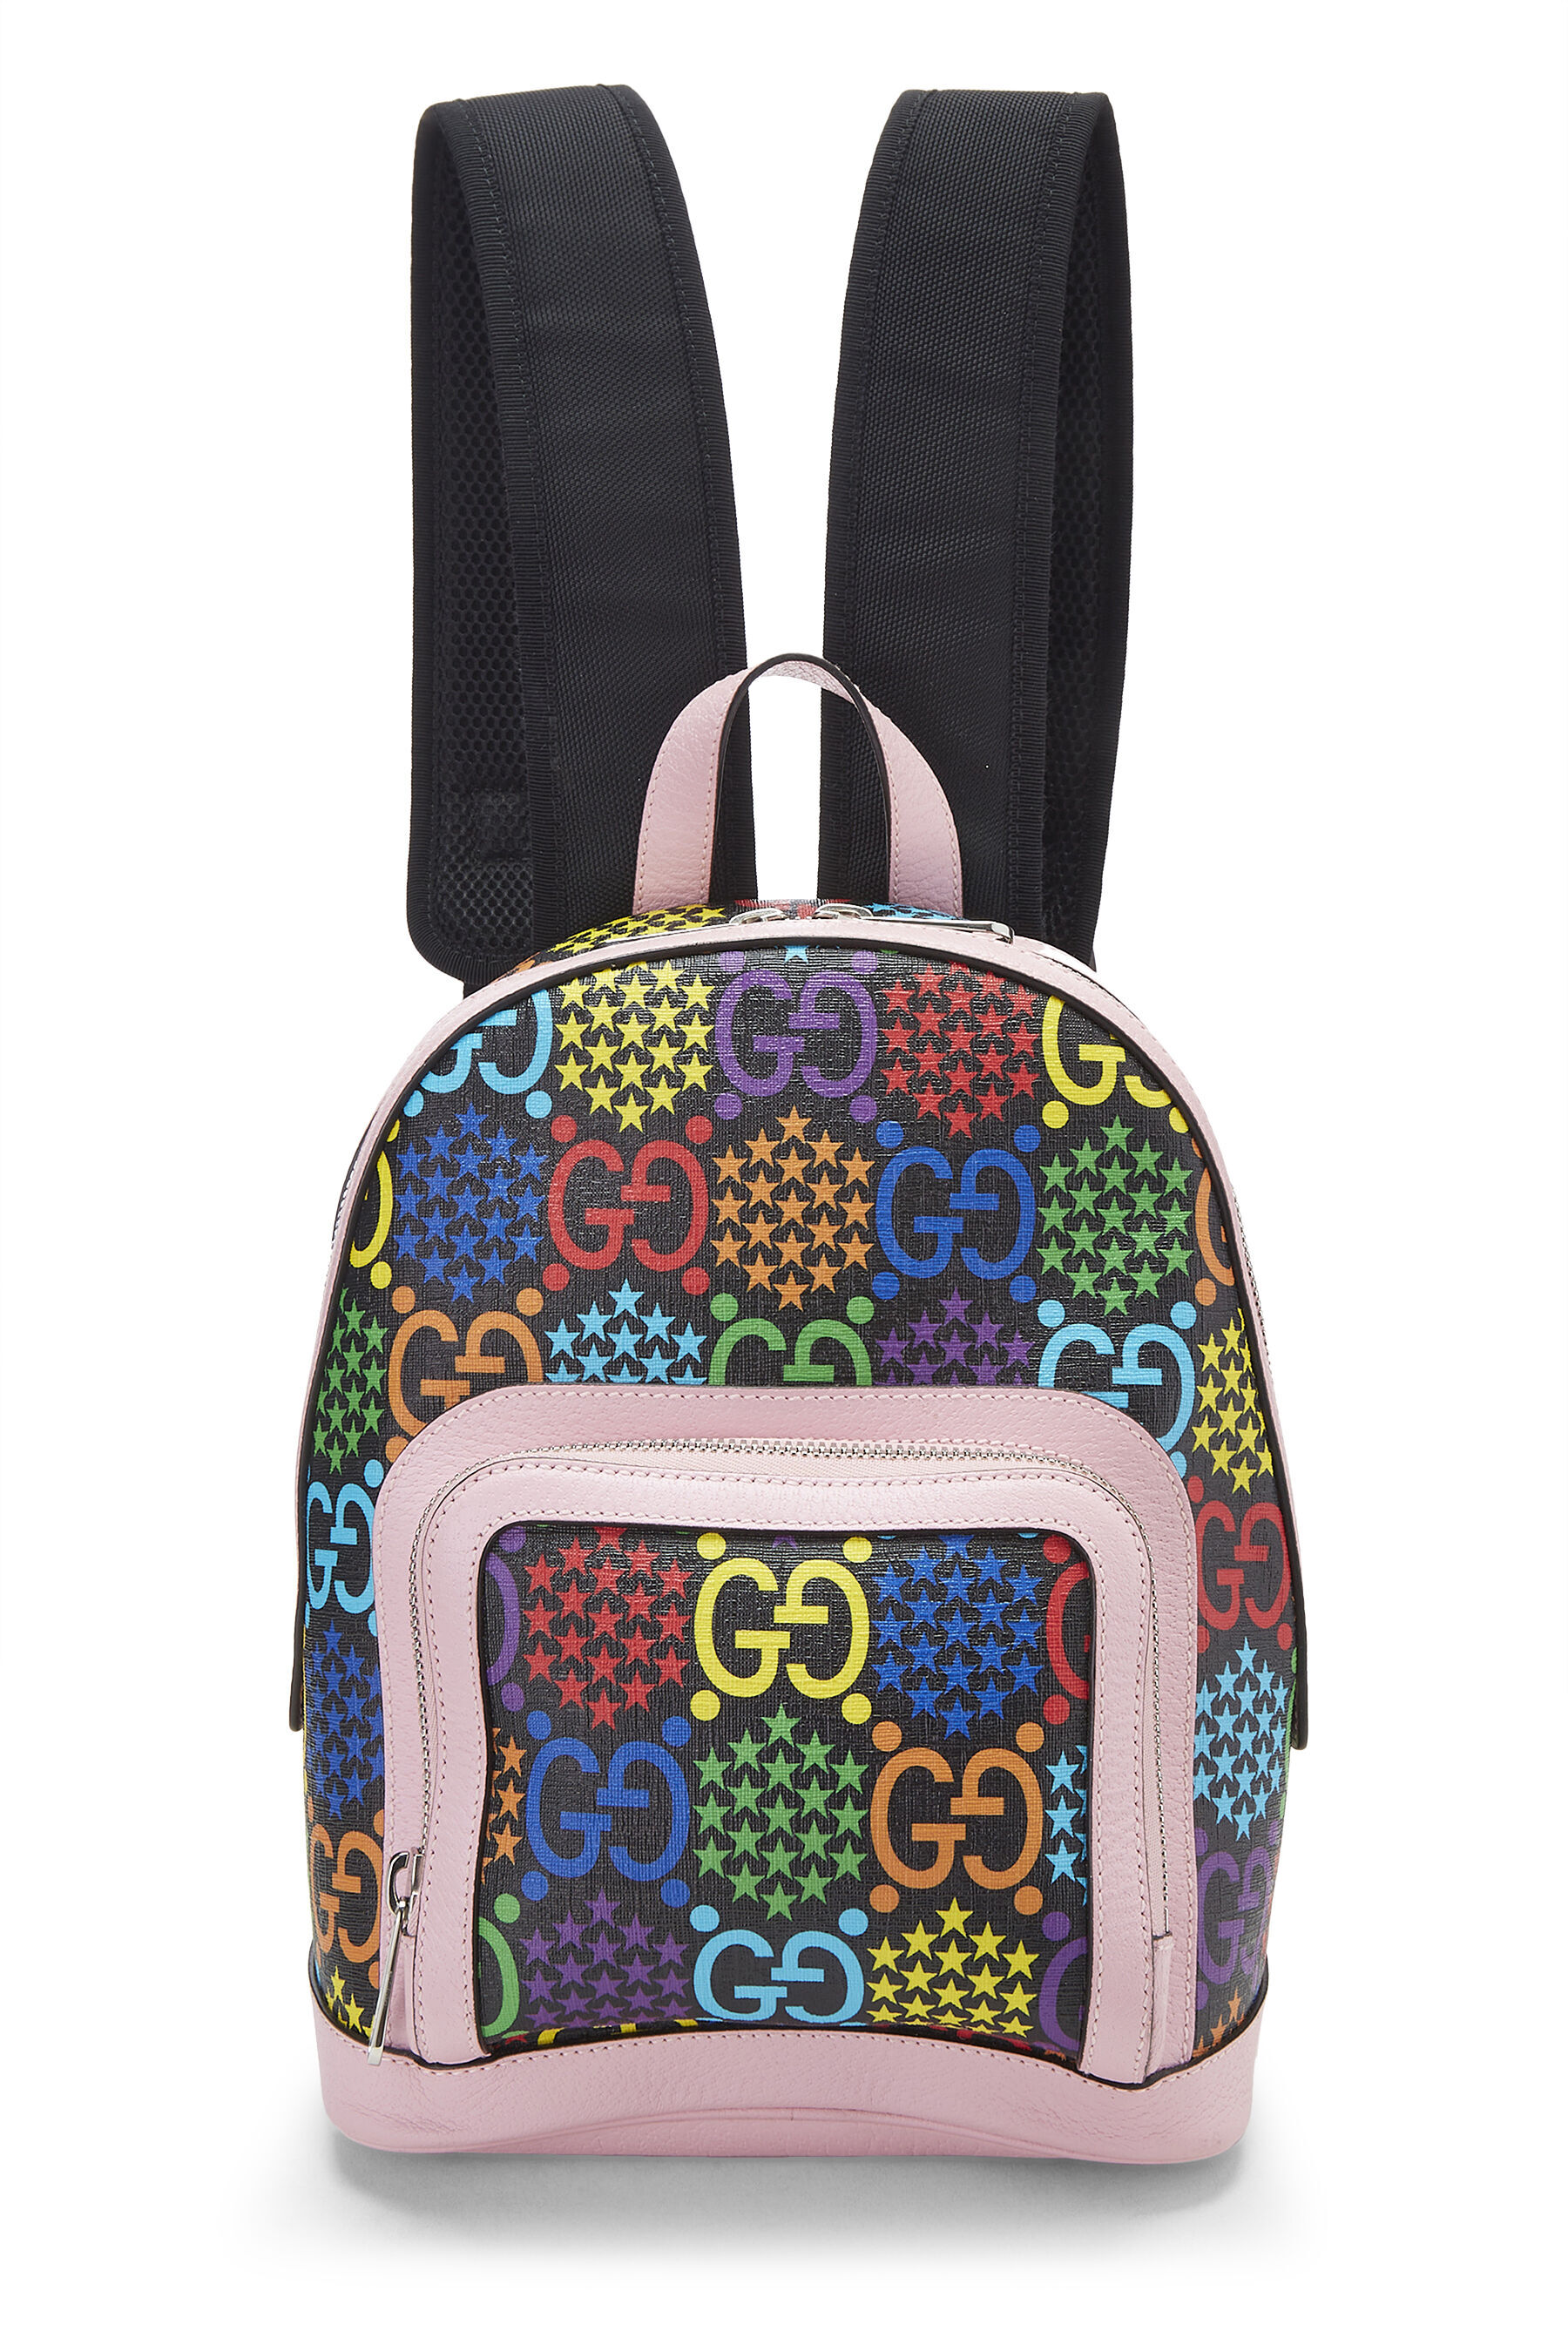 Gucci GG Supreme Canvas Backpack - Farfetch